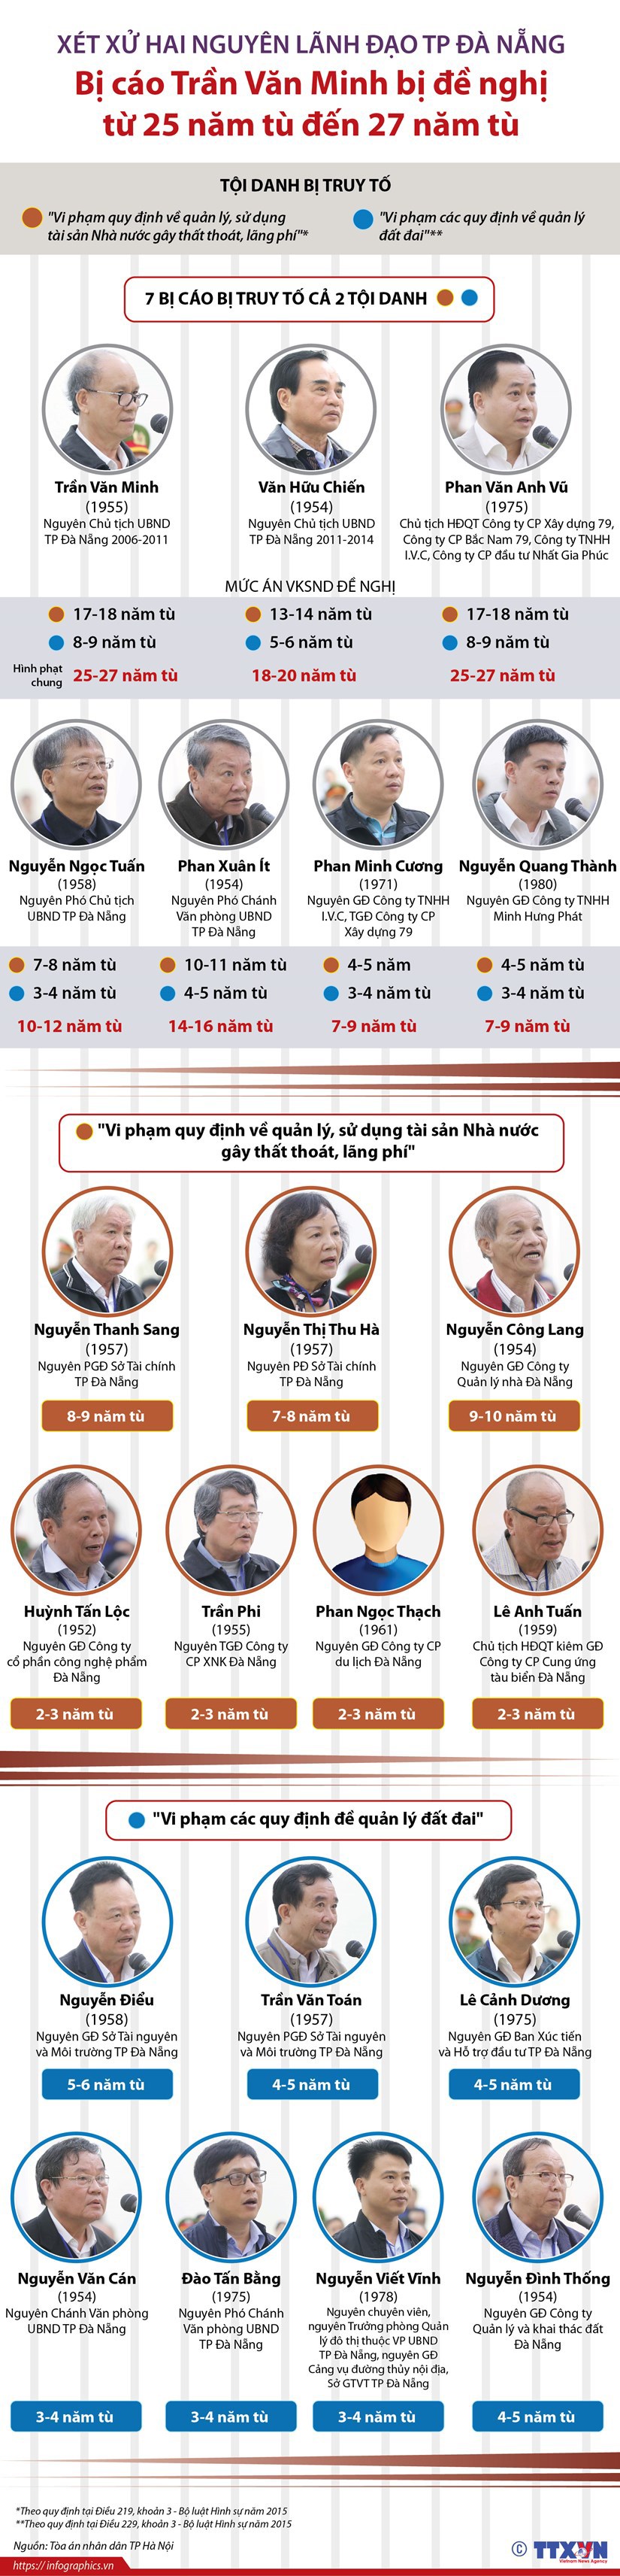 Vụ xét xử hai nguyên lãnh đạo Đà Nẵng: Đề nghị từng mức án cụ thể - Ảnh 1